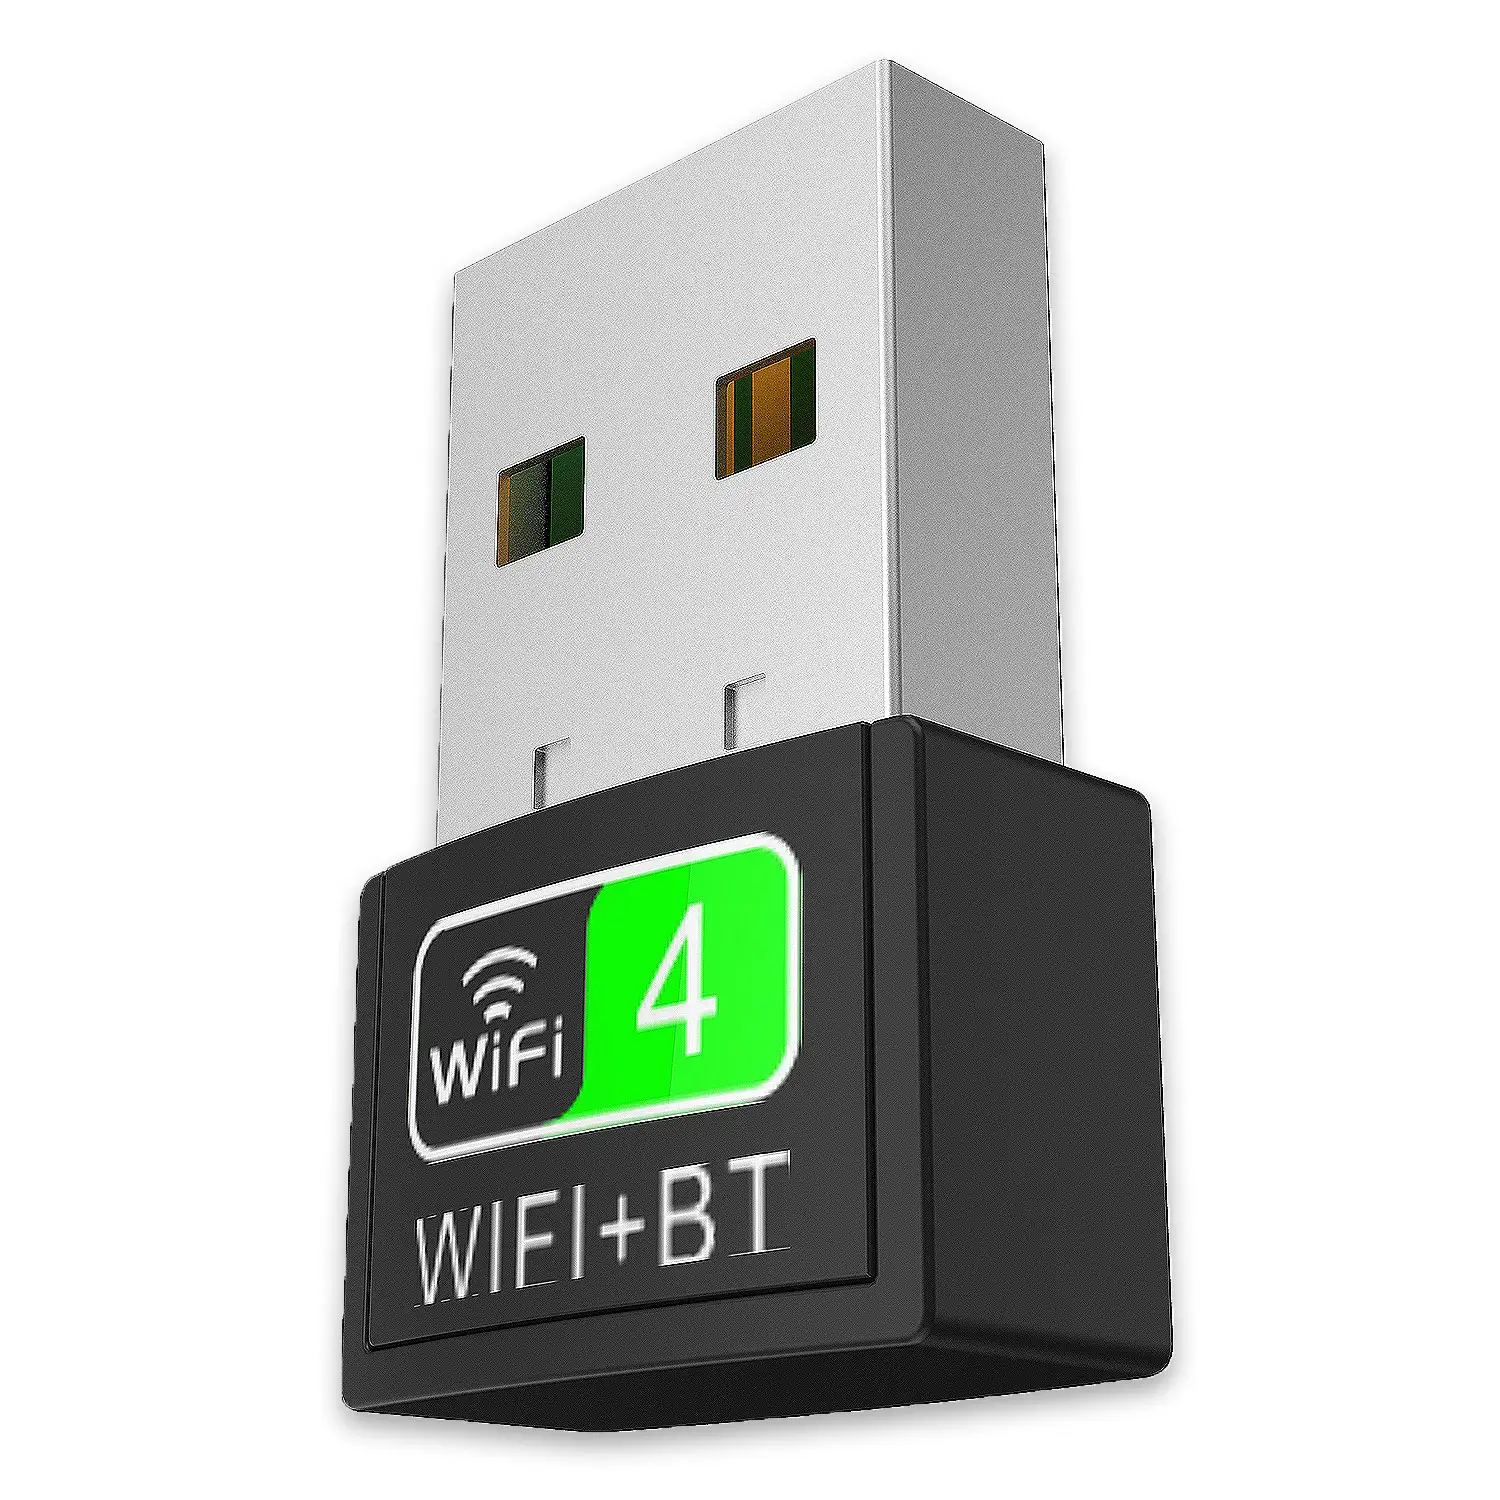 Adaptor Nirkabel Wifi dan Adaptor BT 4 2 Adaptor USB 2 0 untuk Laptop 150Mbps Hitam OEM Status Band Jenis Warna Fitur Transmisi